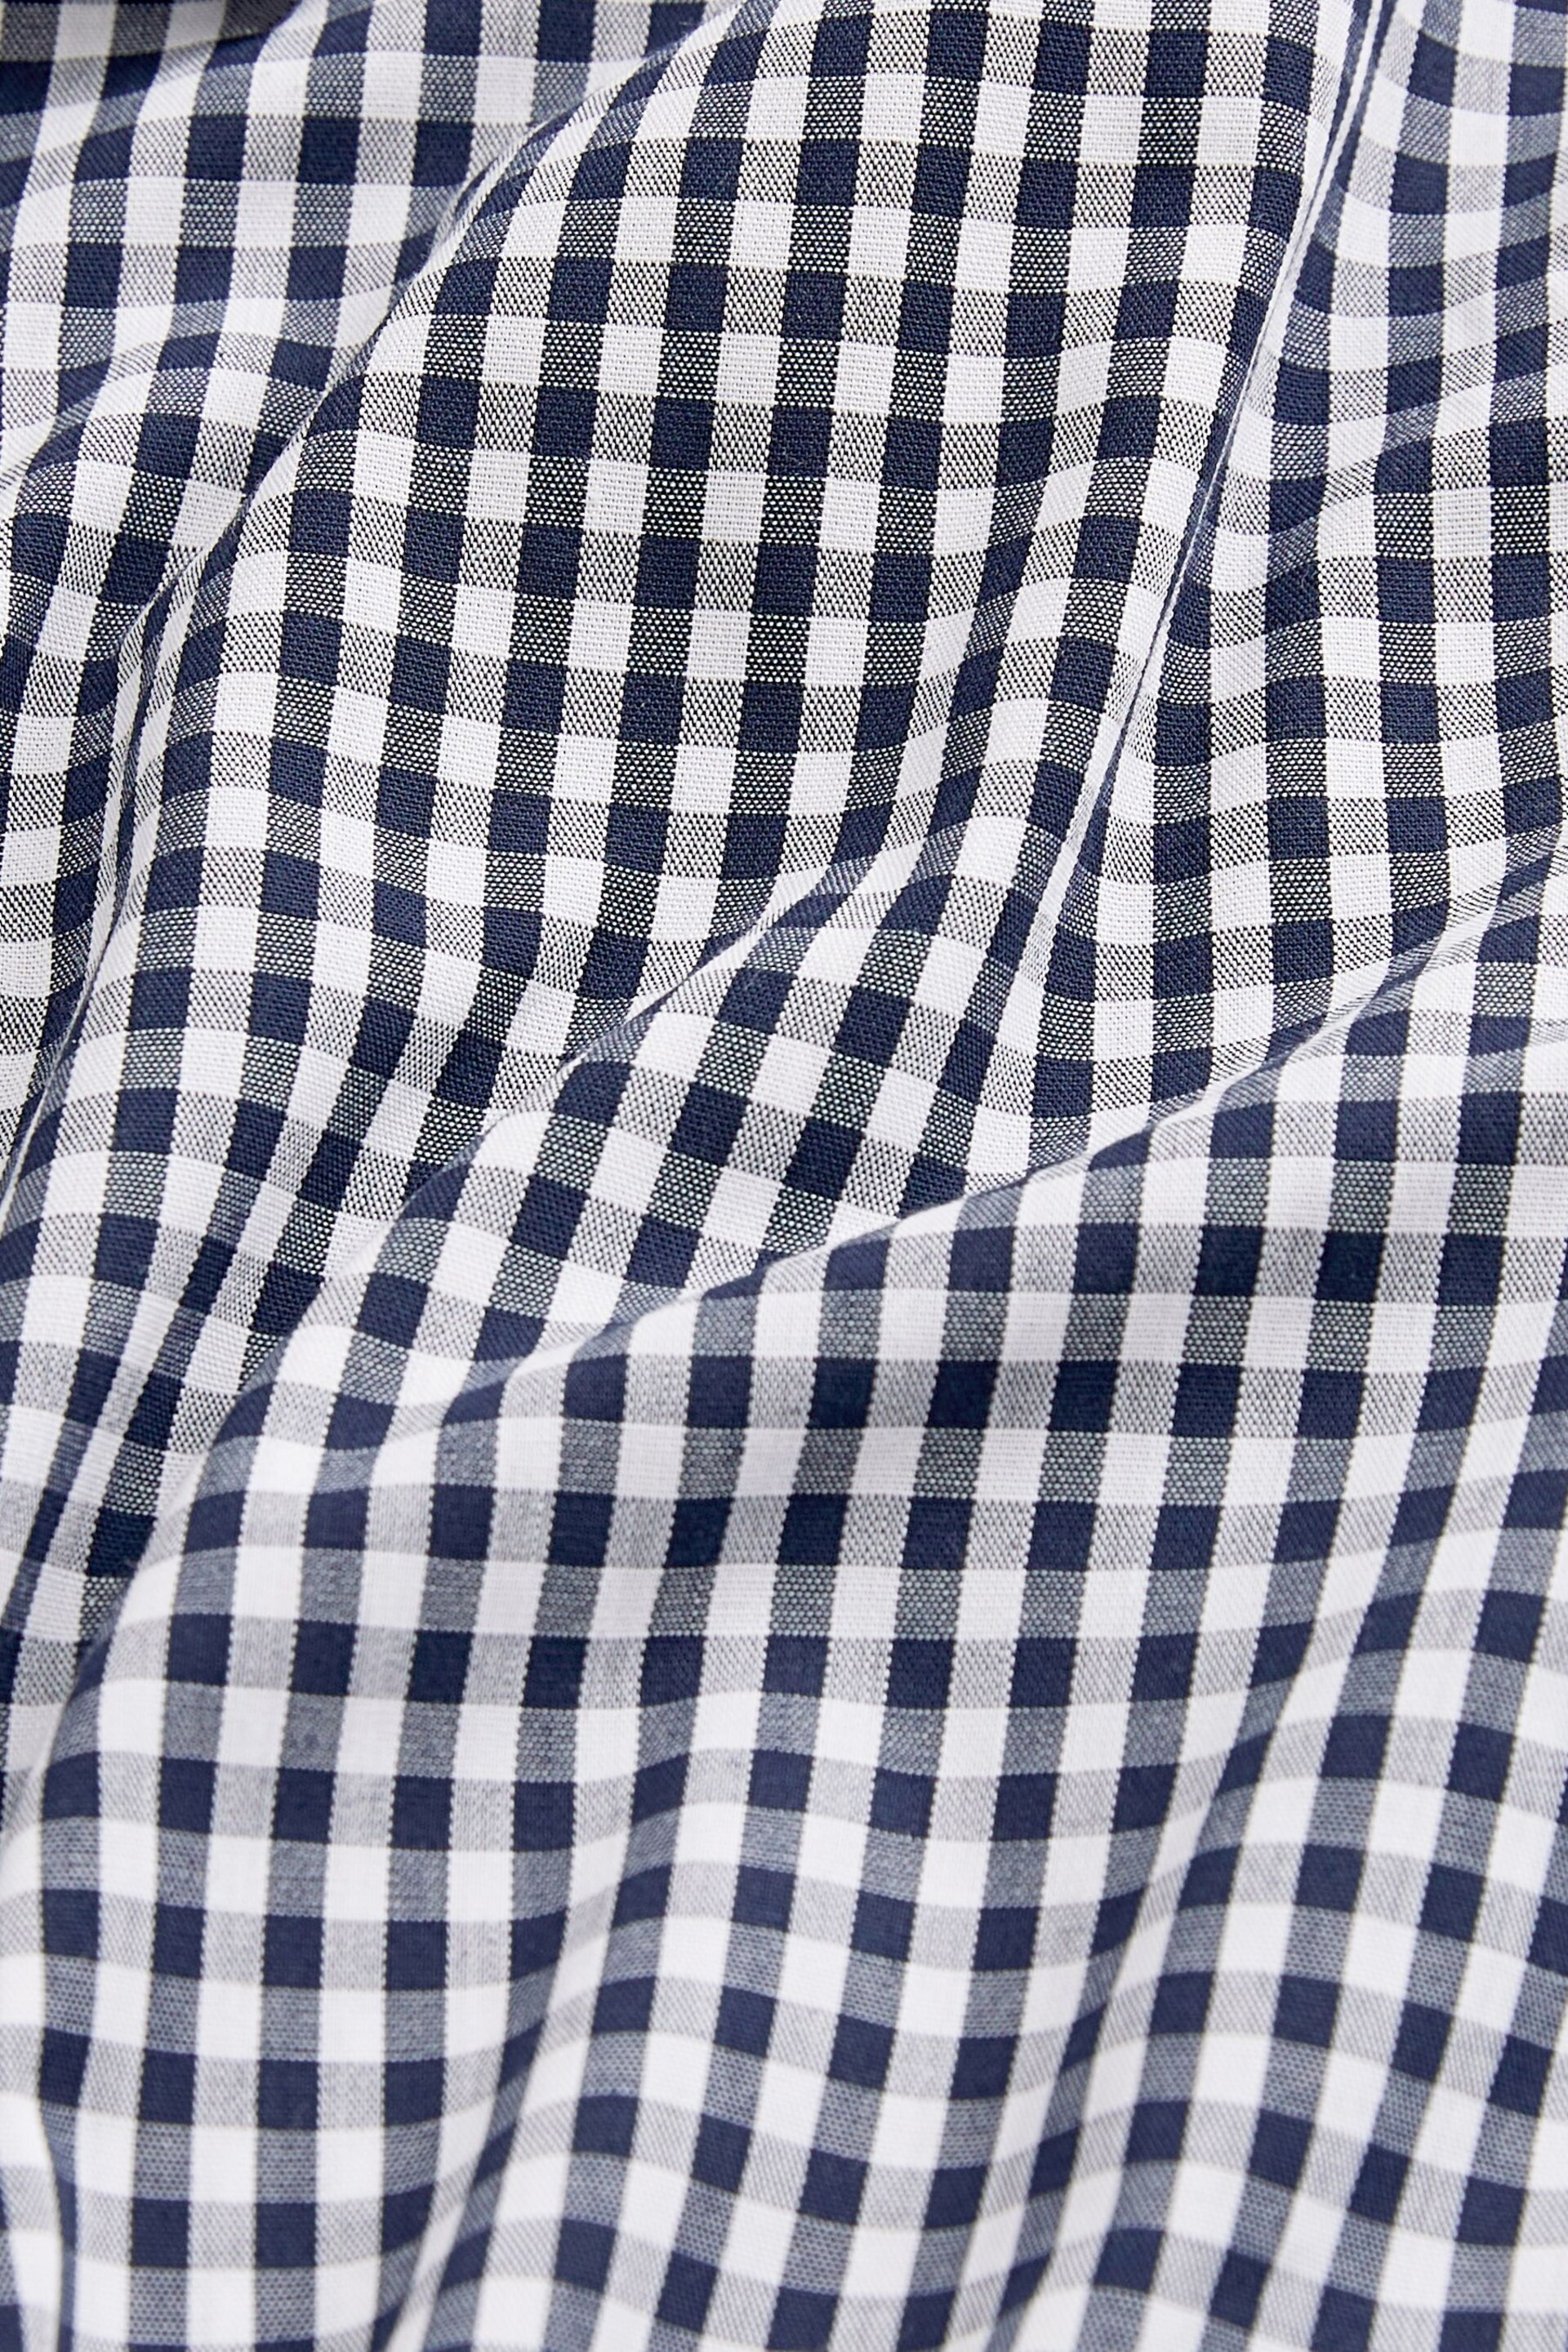 Blue/Black Gingham Regular Fit Trimmed Shirts 2 Pack - Image 4 of 13